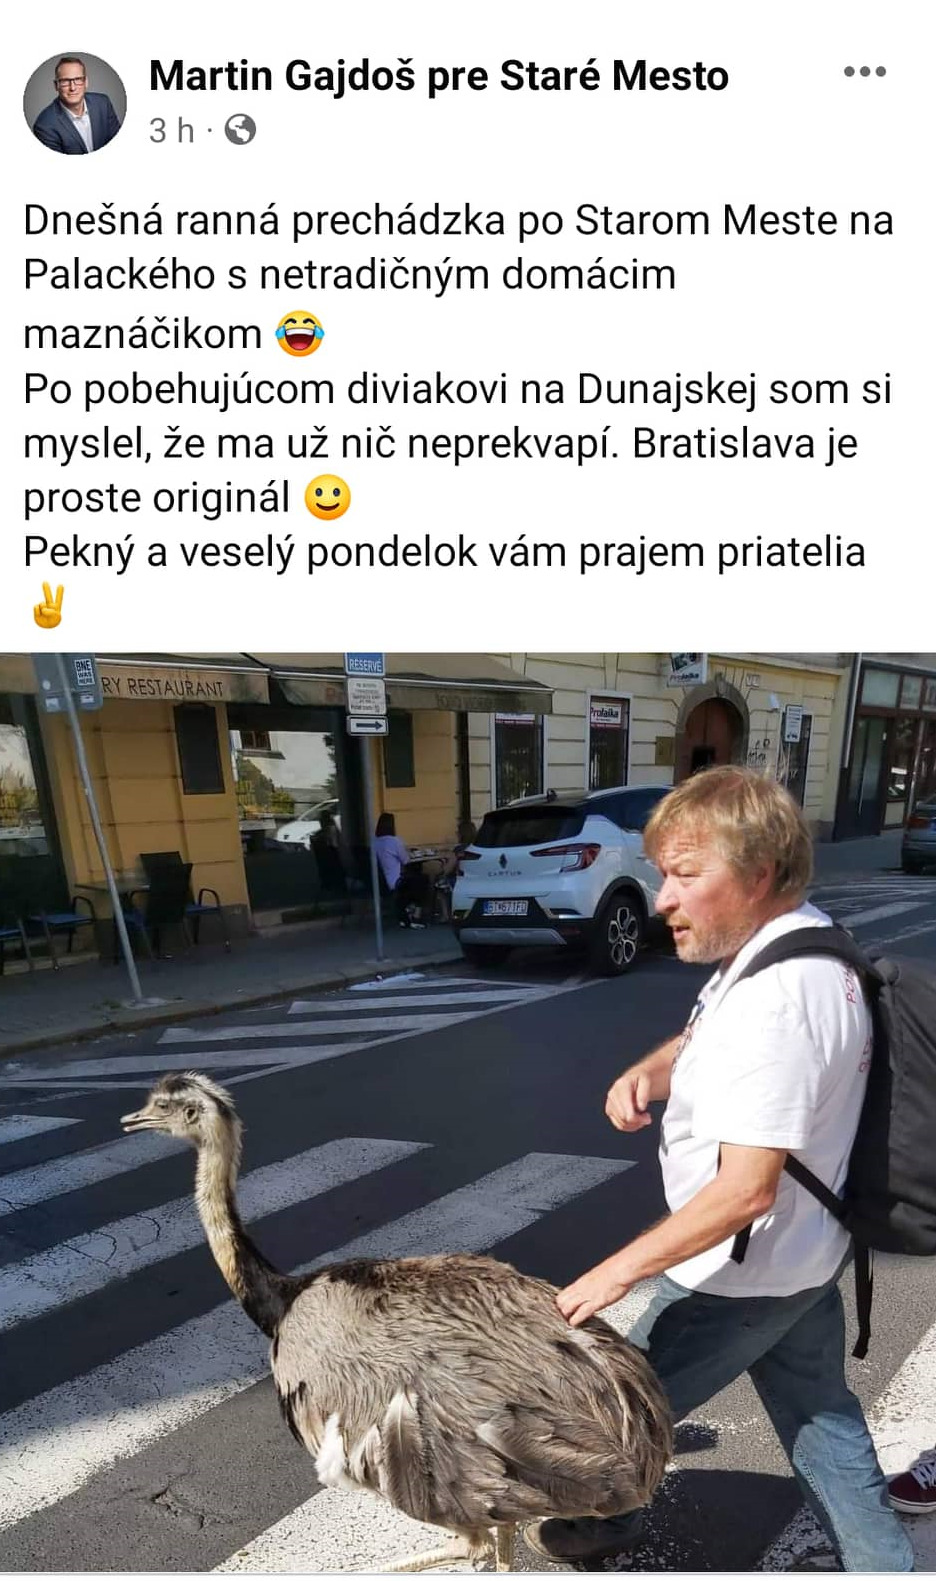 Po centre hlavného mesta sa premával živý emu. Zdroj: Martin Gajdoš pre Staré Mesto/FB